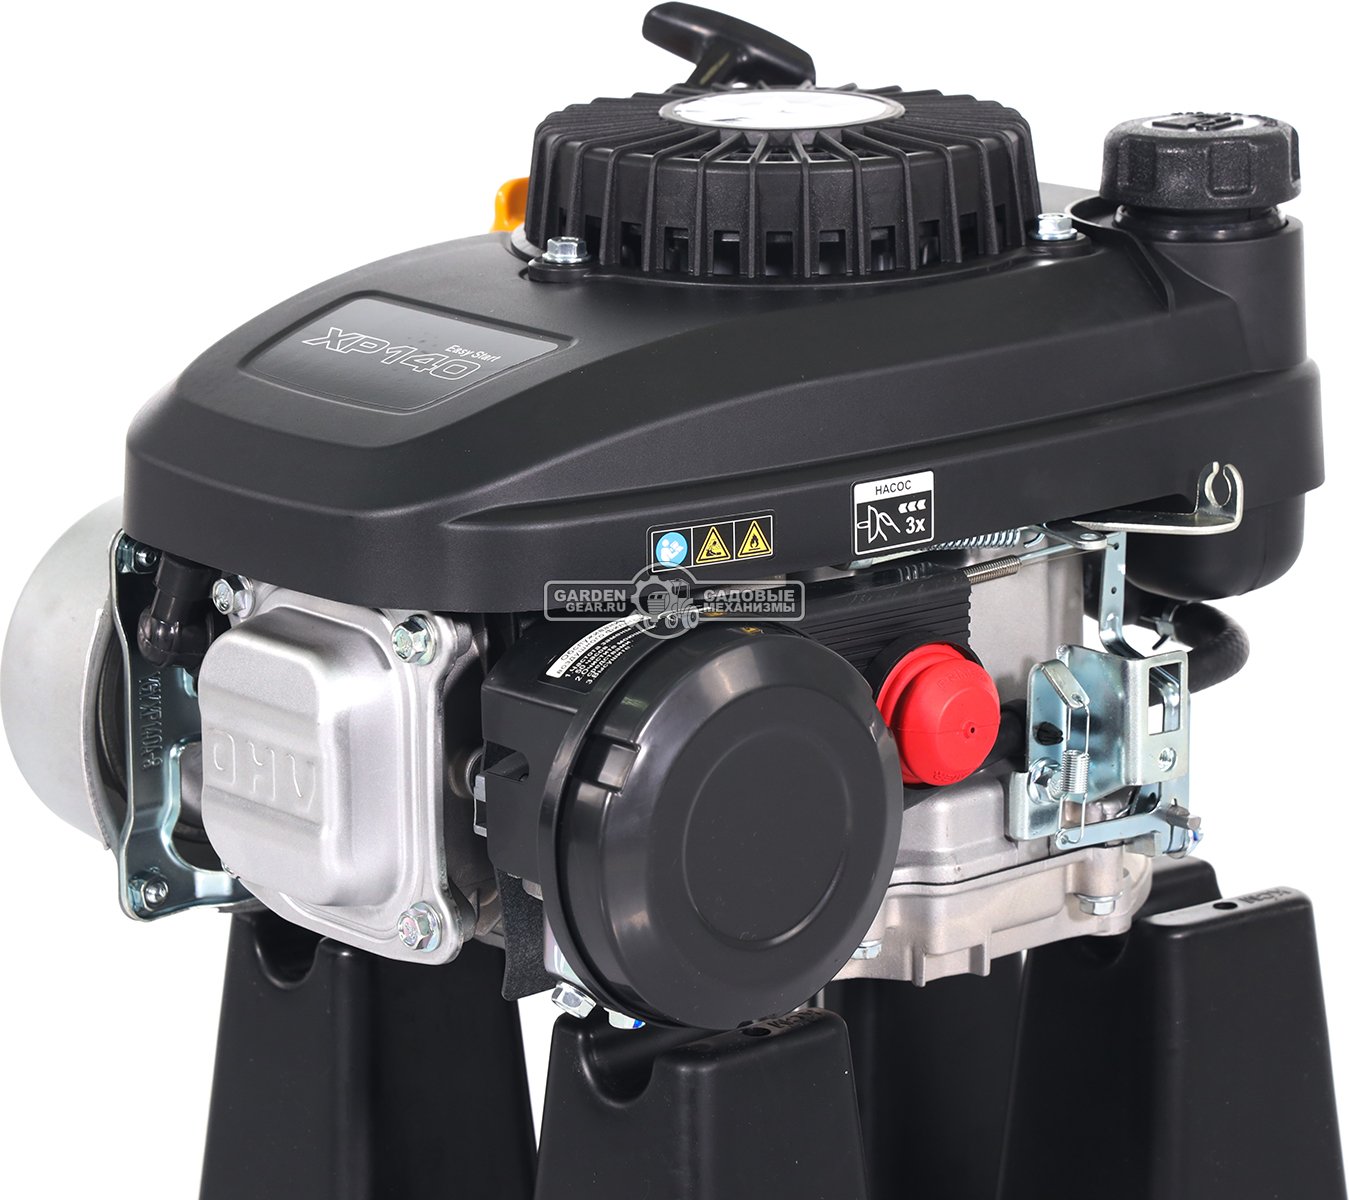 Бензиновый двигатель Zongshen XP140A (PRC, 3,5 л.с., 141 см3. диам. 22,2 мм, L 80 мм,  шпонка, динам. тормоз 7,8 кг)